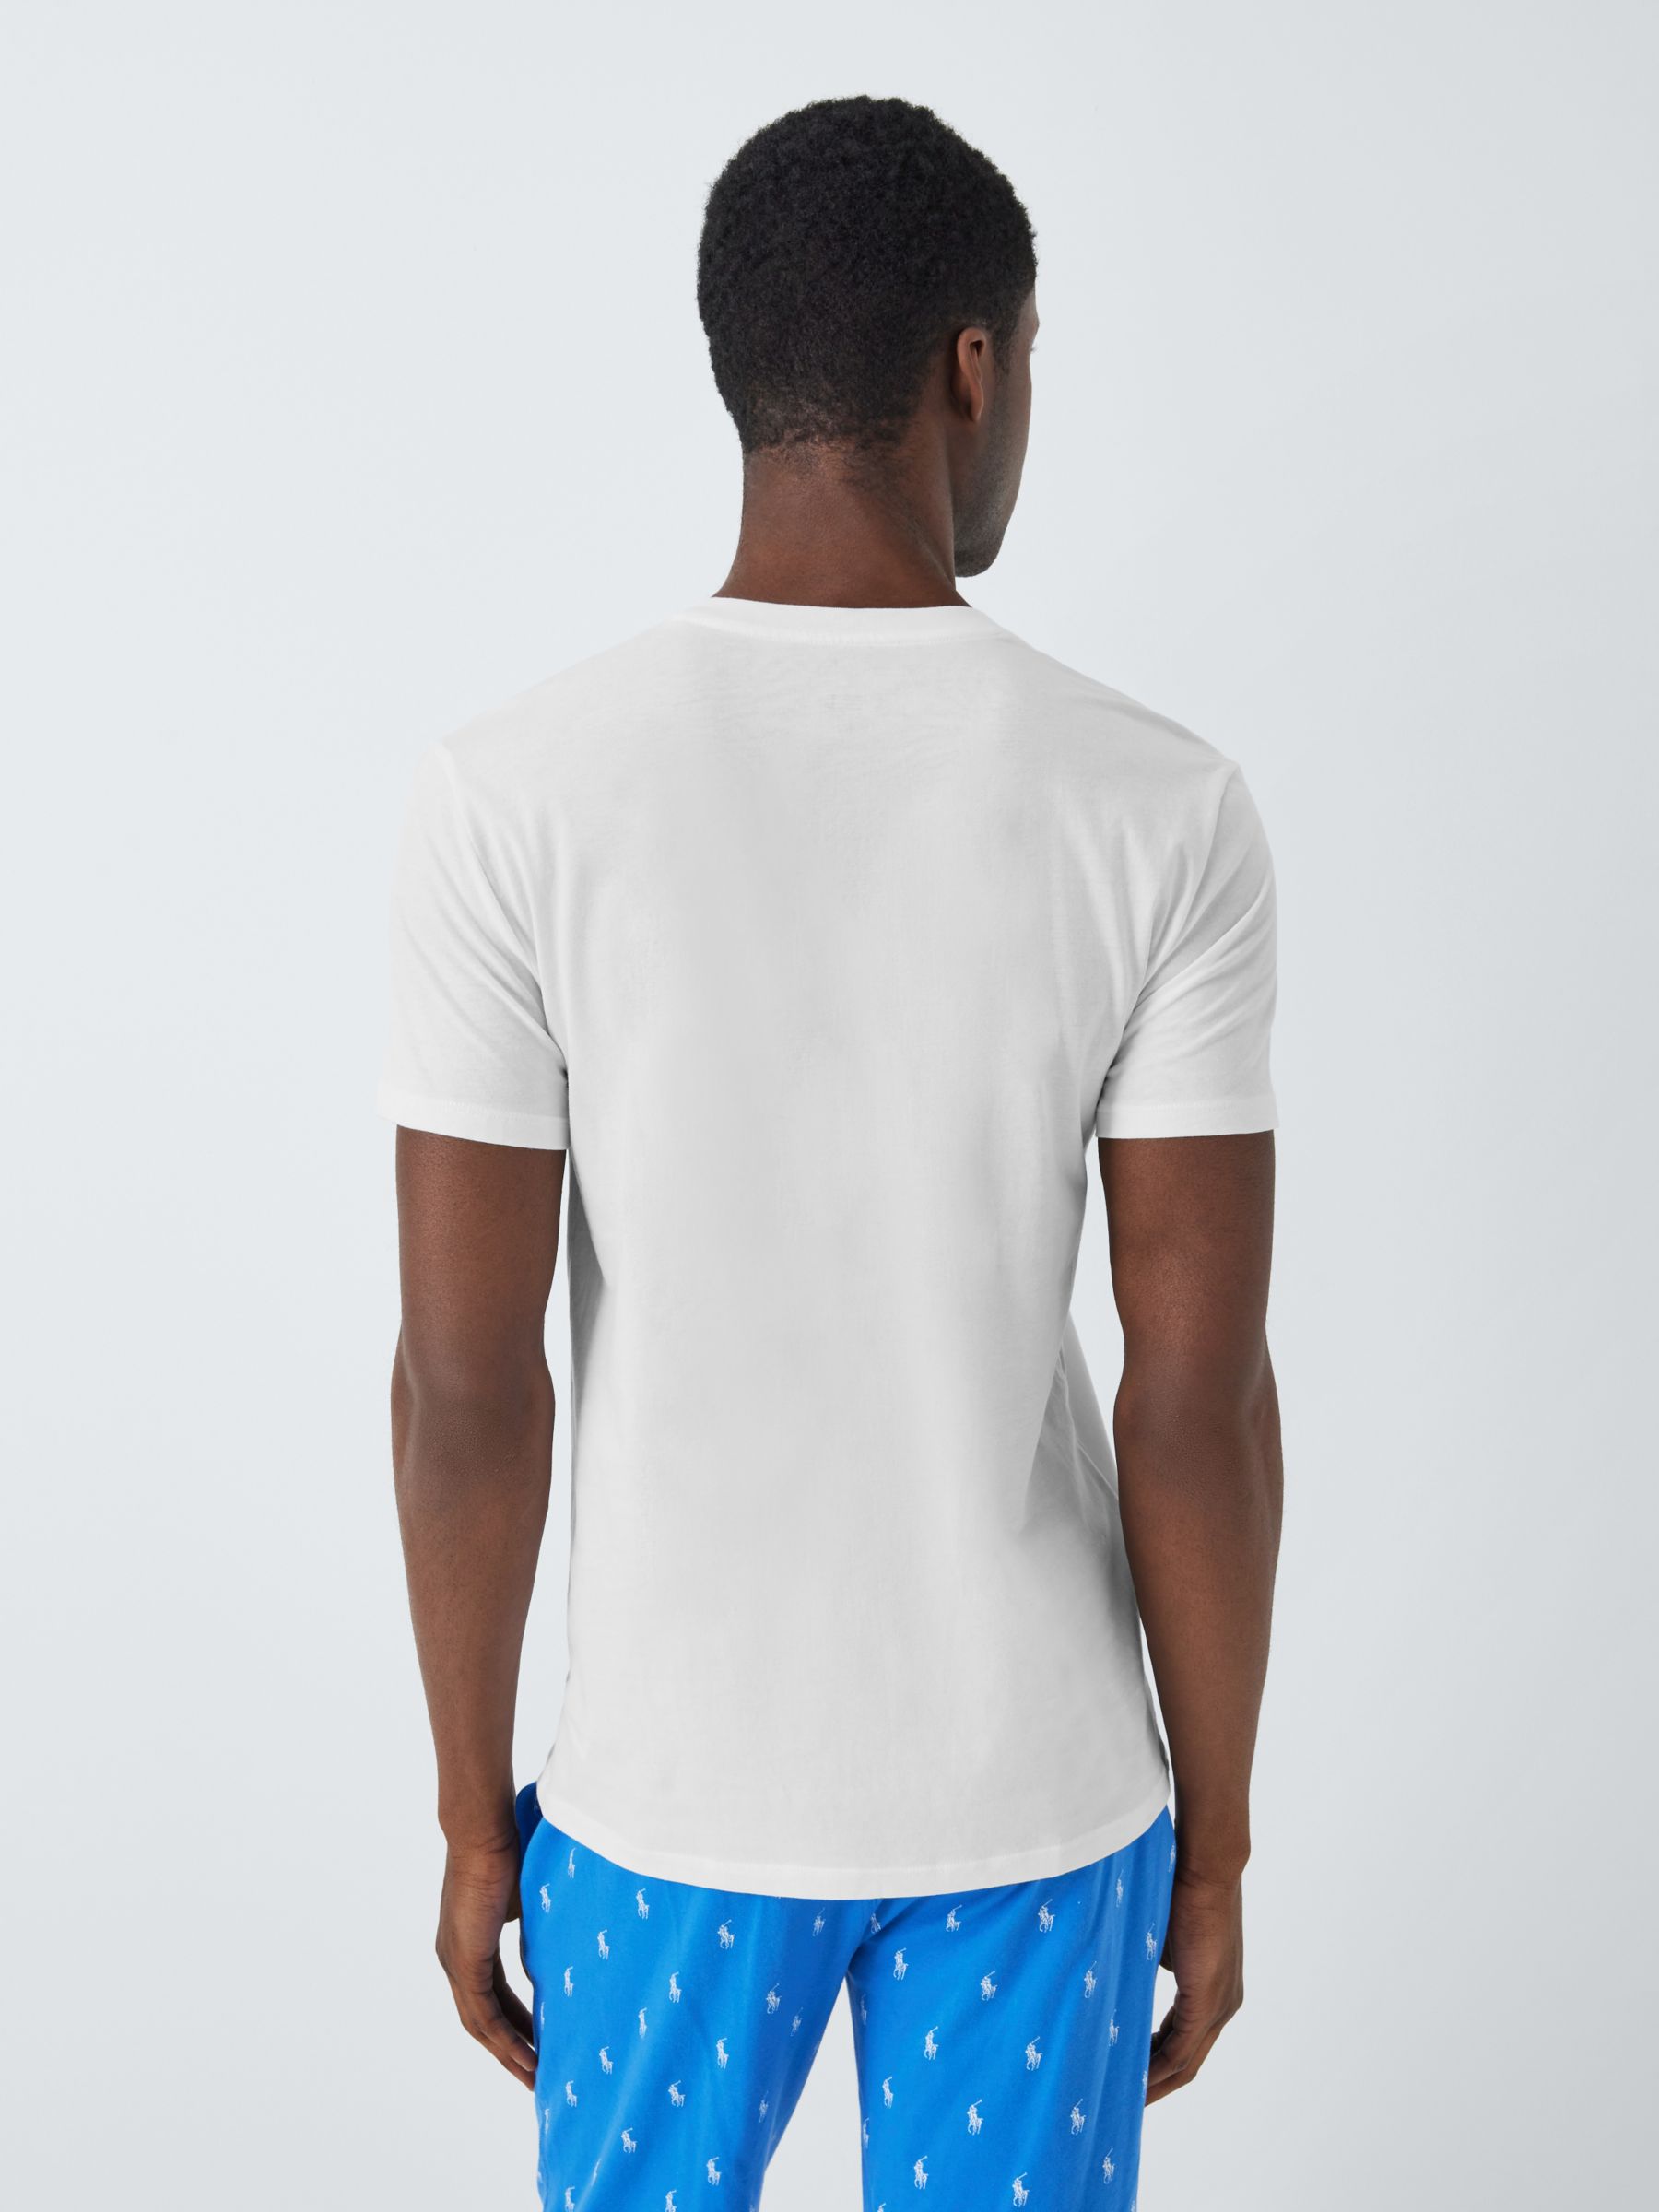 Ralph Lauren V-Neck T-Shirt, Pack of 3, White, M